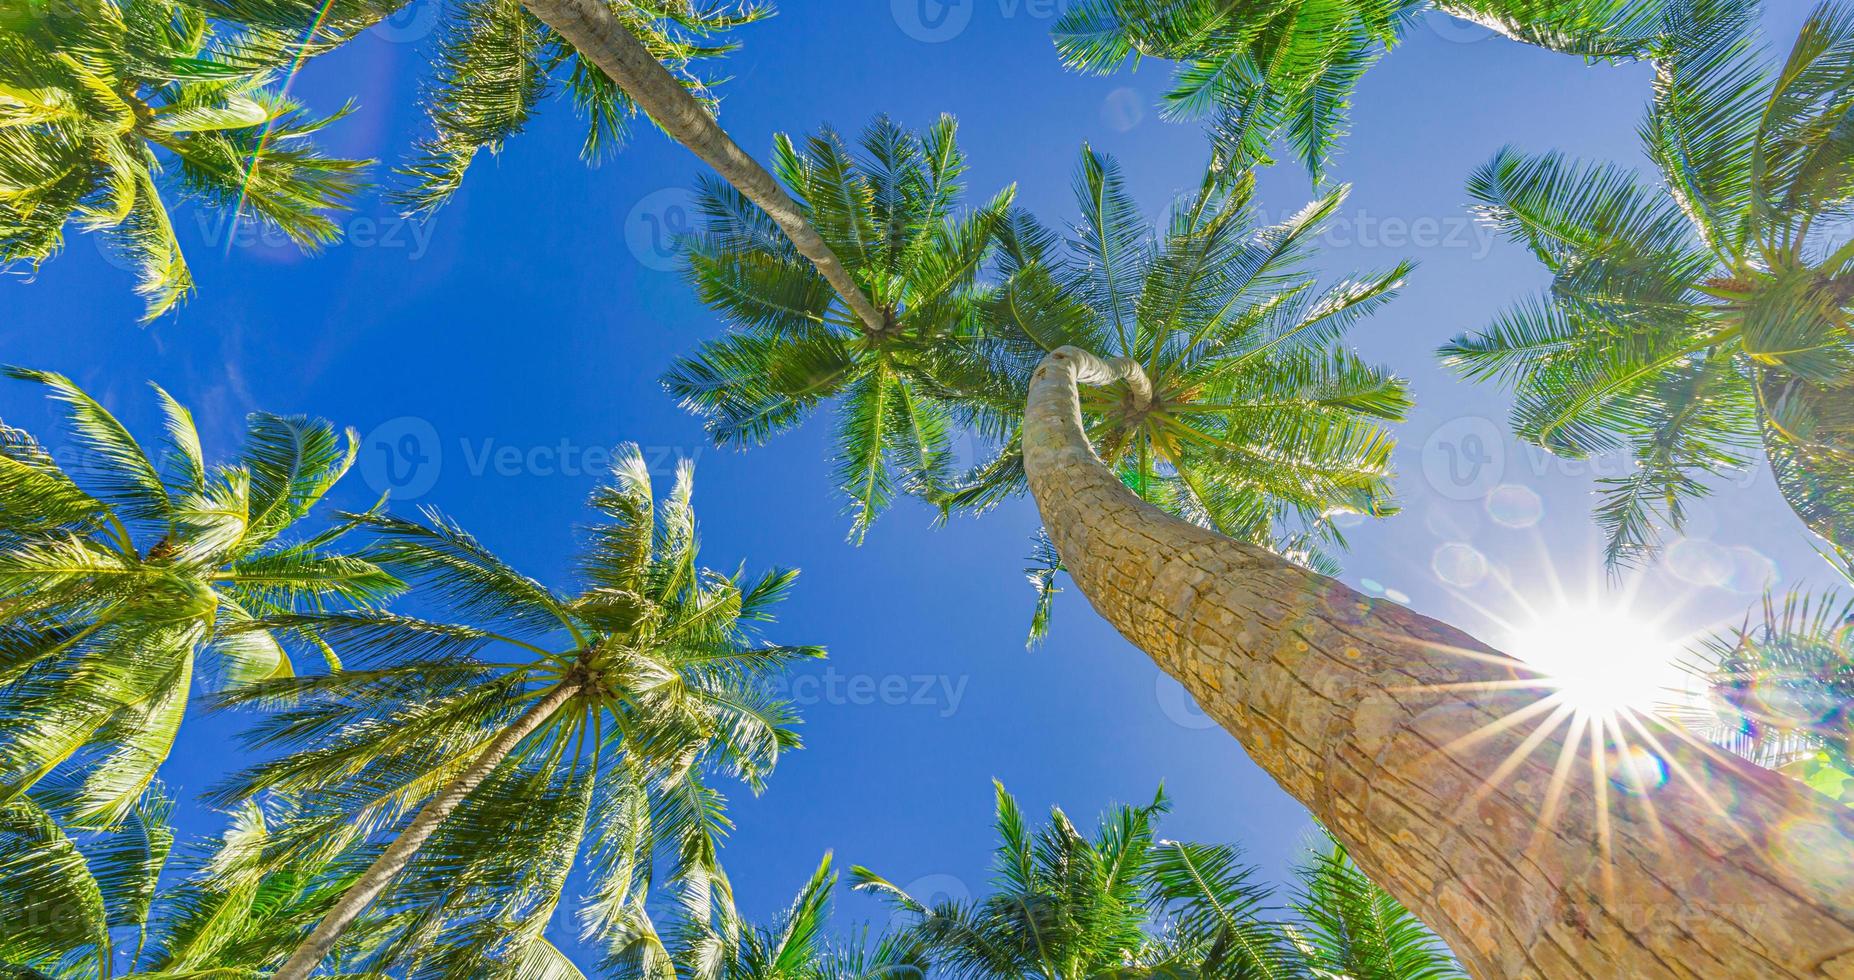 kokosnusspalme mit blauem himmel, schöner tropischer sonnenstrahlenhintergrund. Niedrige Sicht der exotischen Natur mit Palmblättern. Reiselandschaft foto